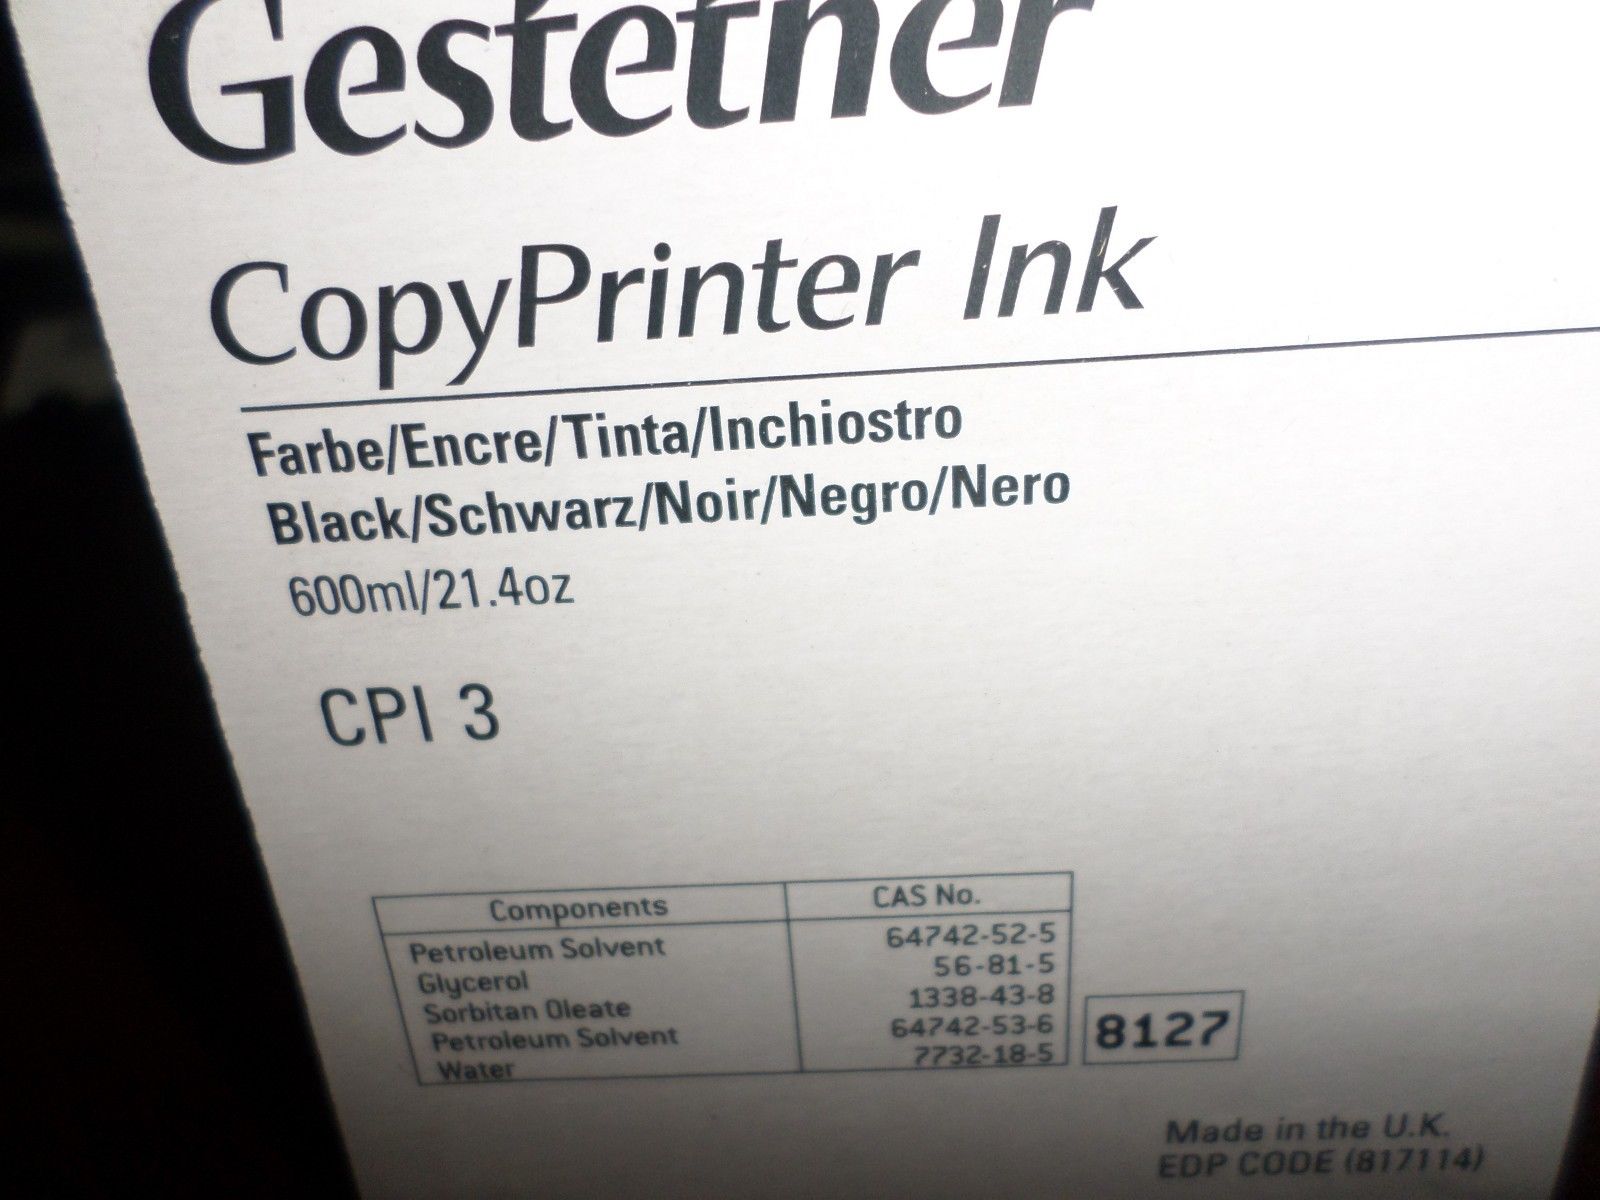 GENUINE GESTETNER COPYPRINTER INK CPI 3 EDP